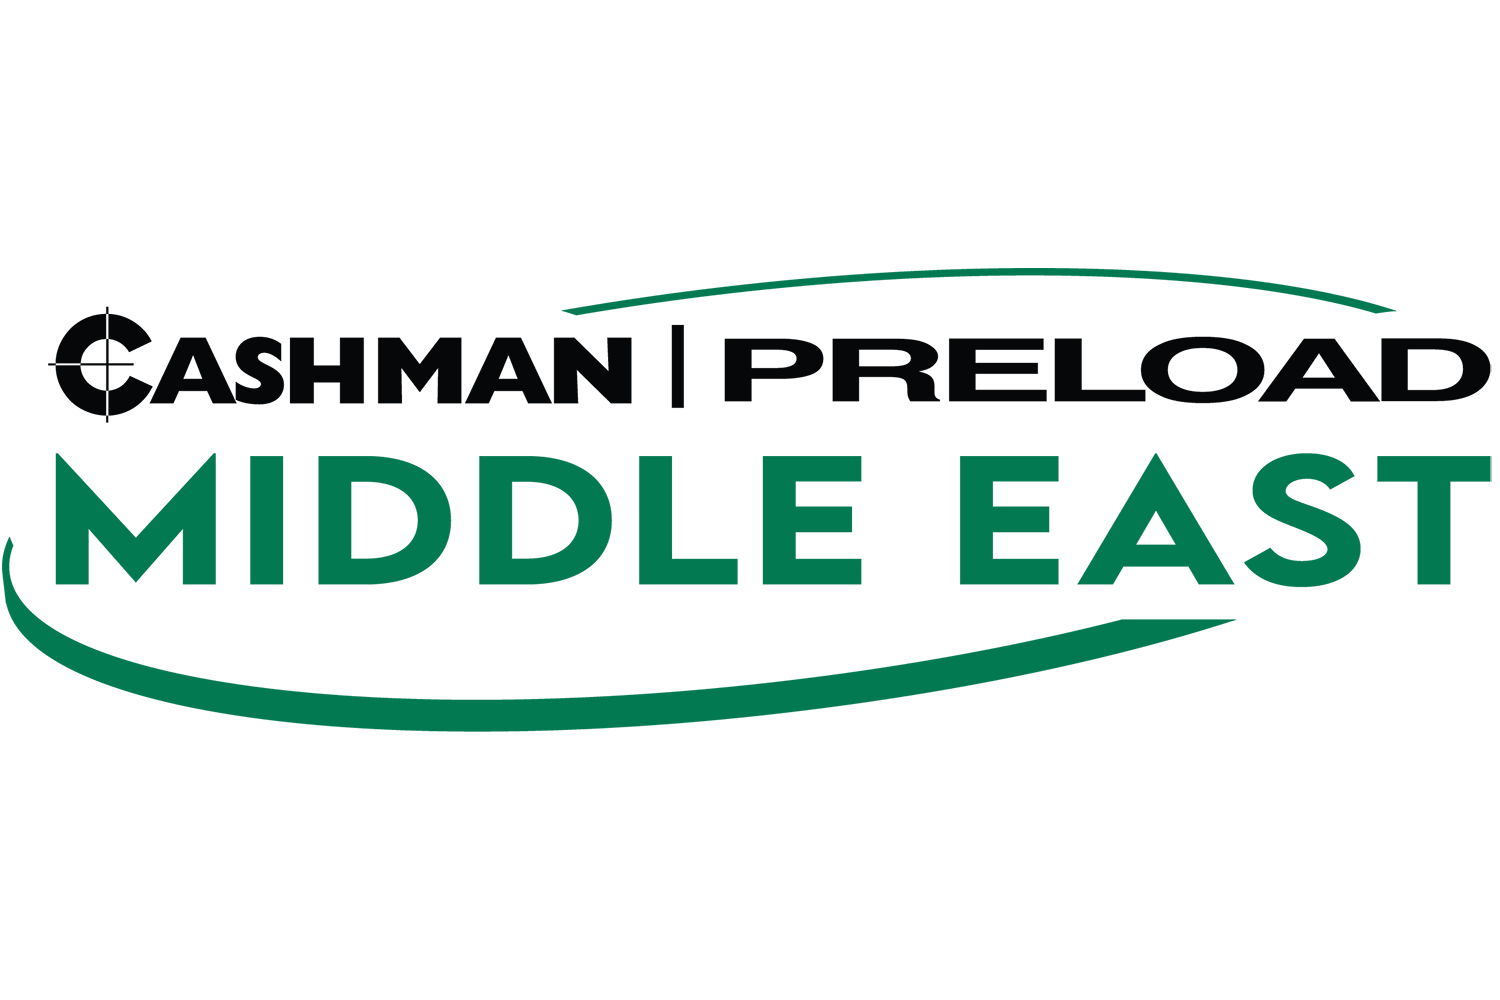 Preload Middle East